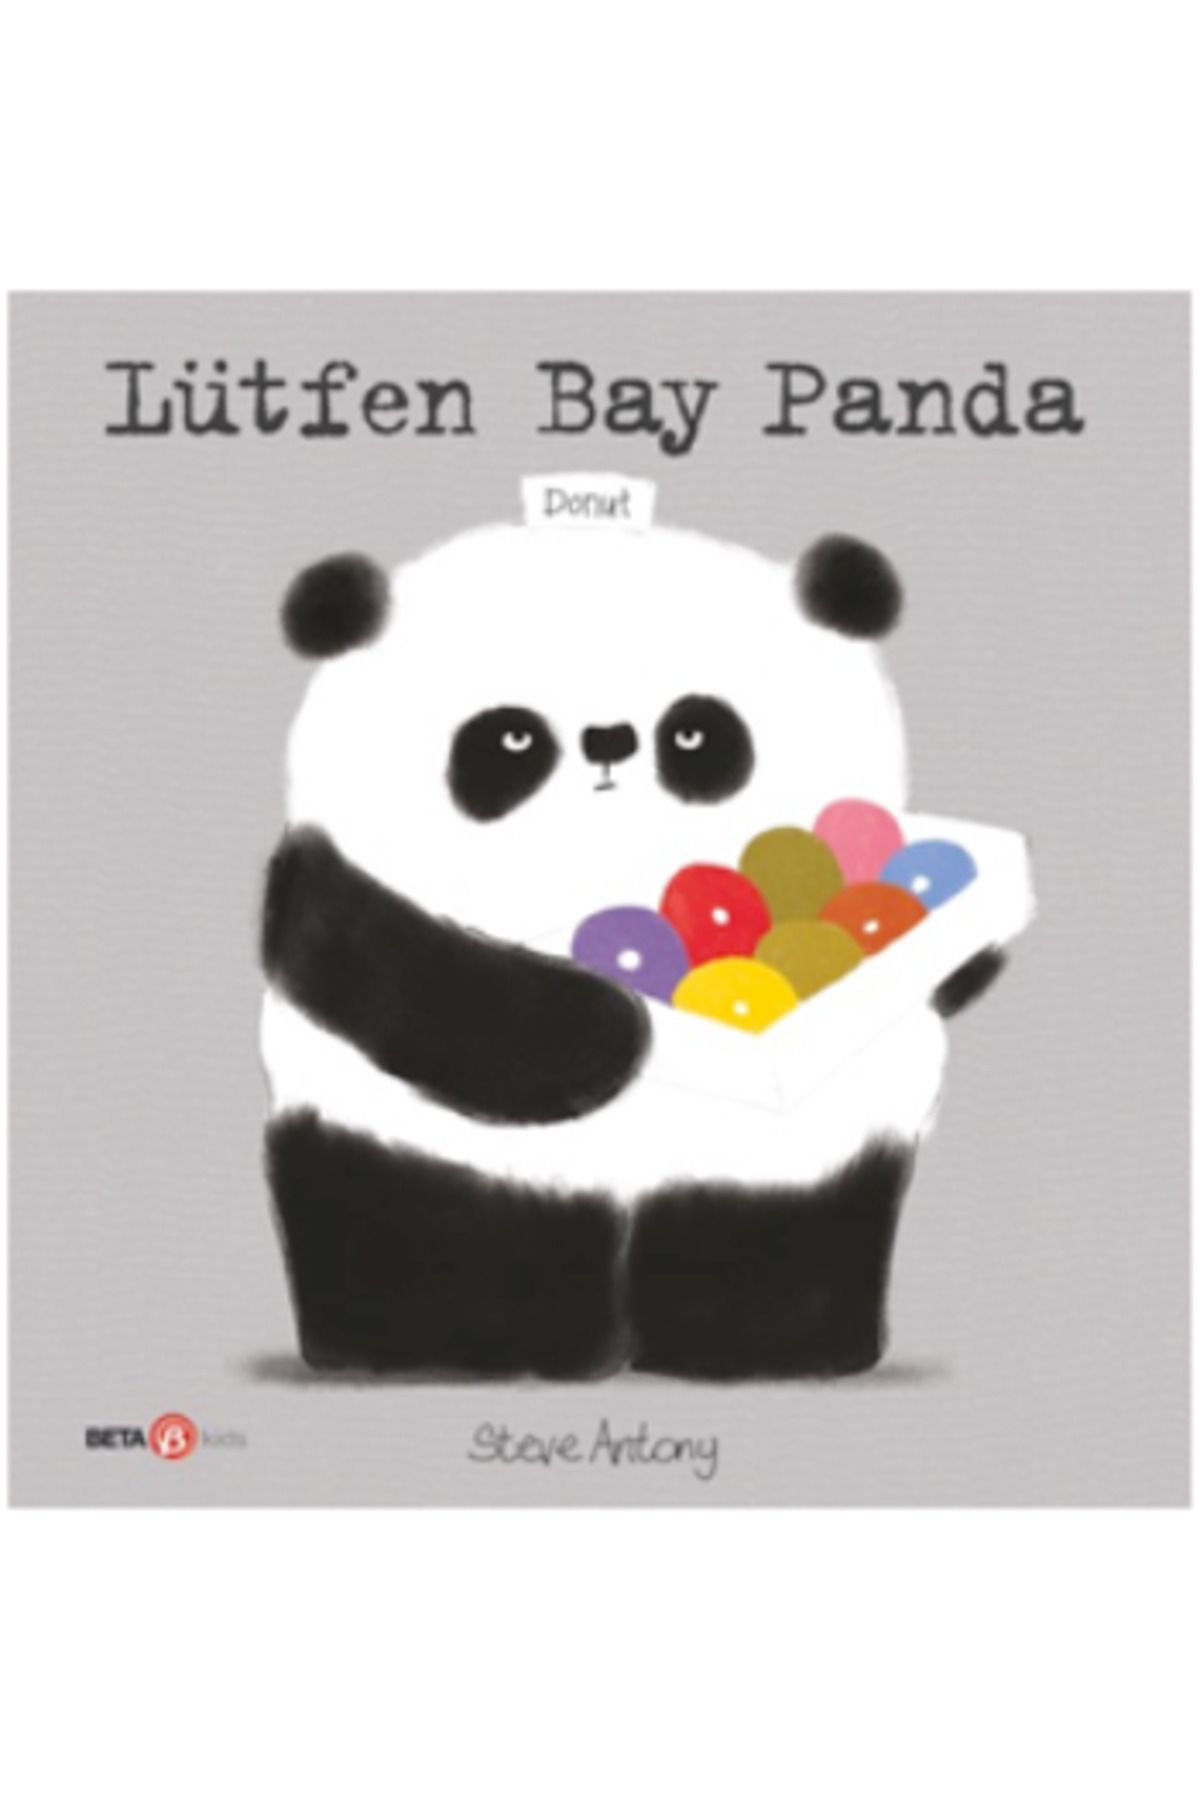 Beta Kids Lütfen Bay Panda